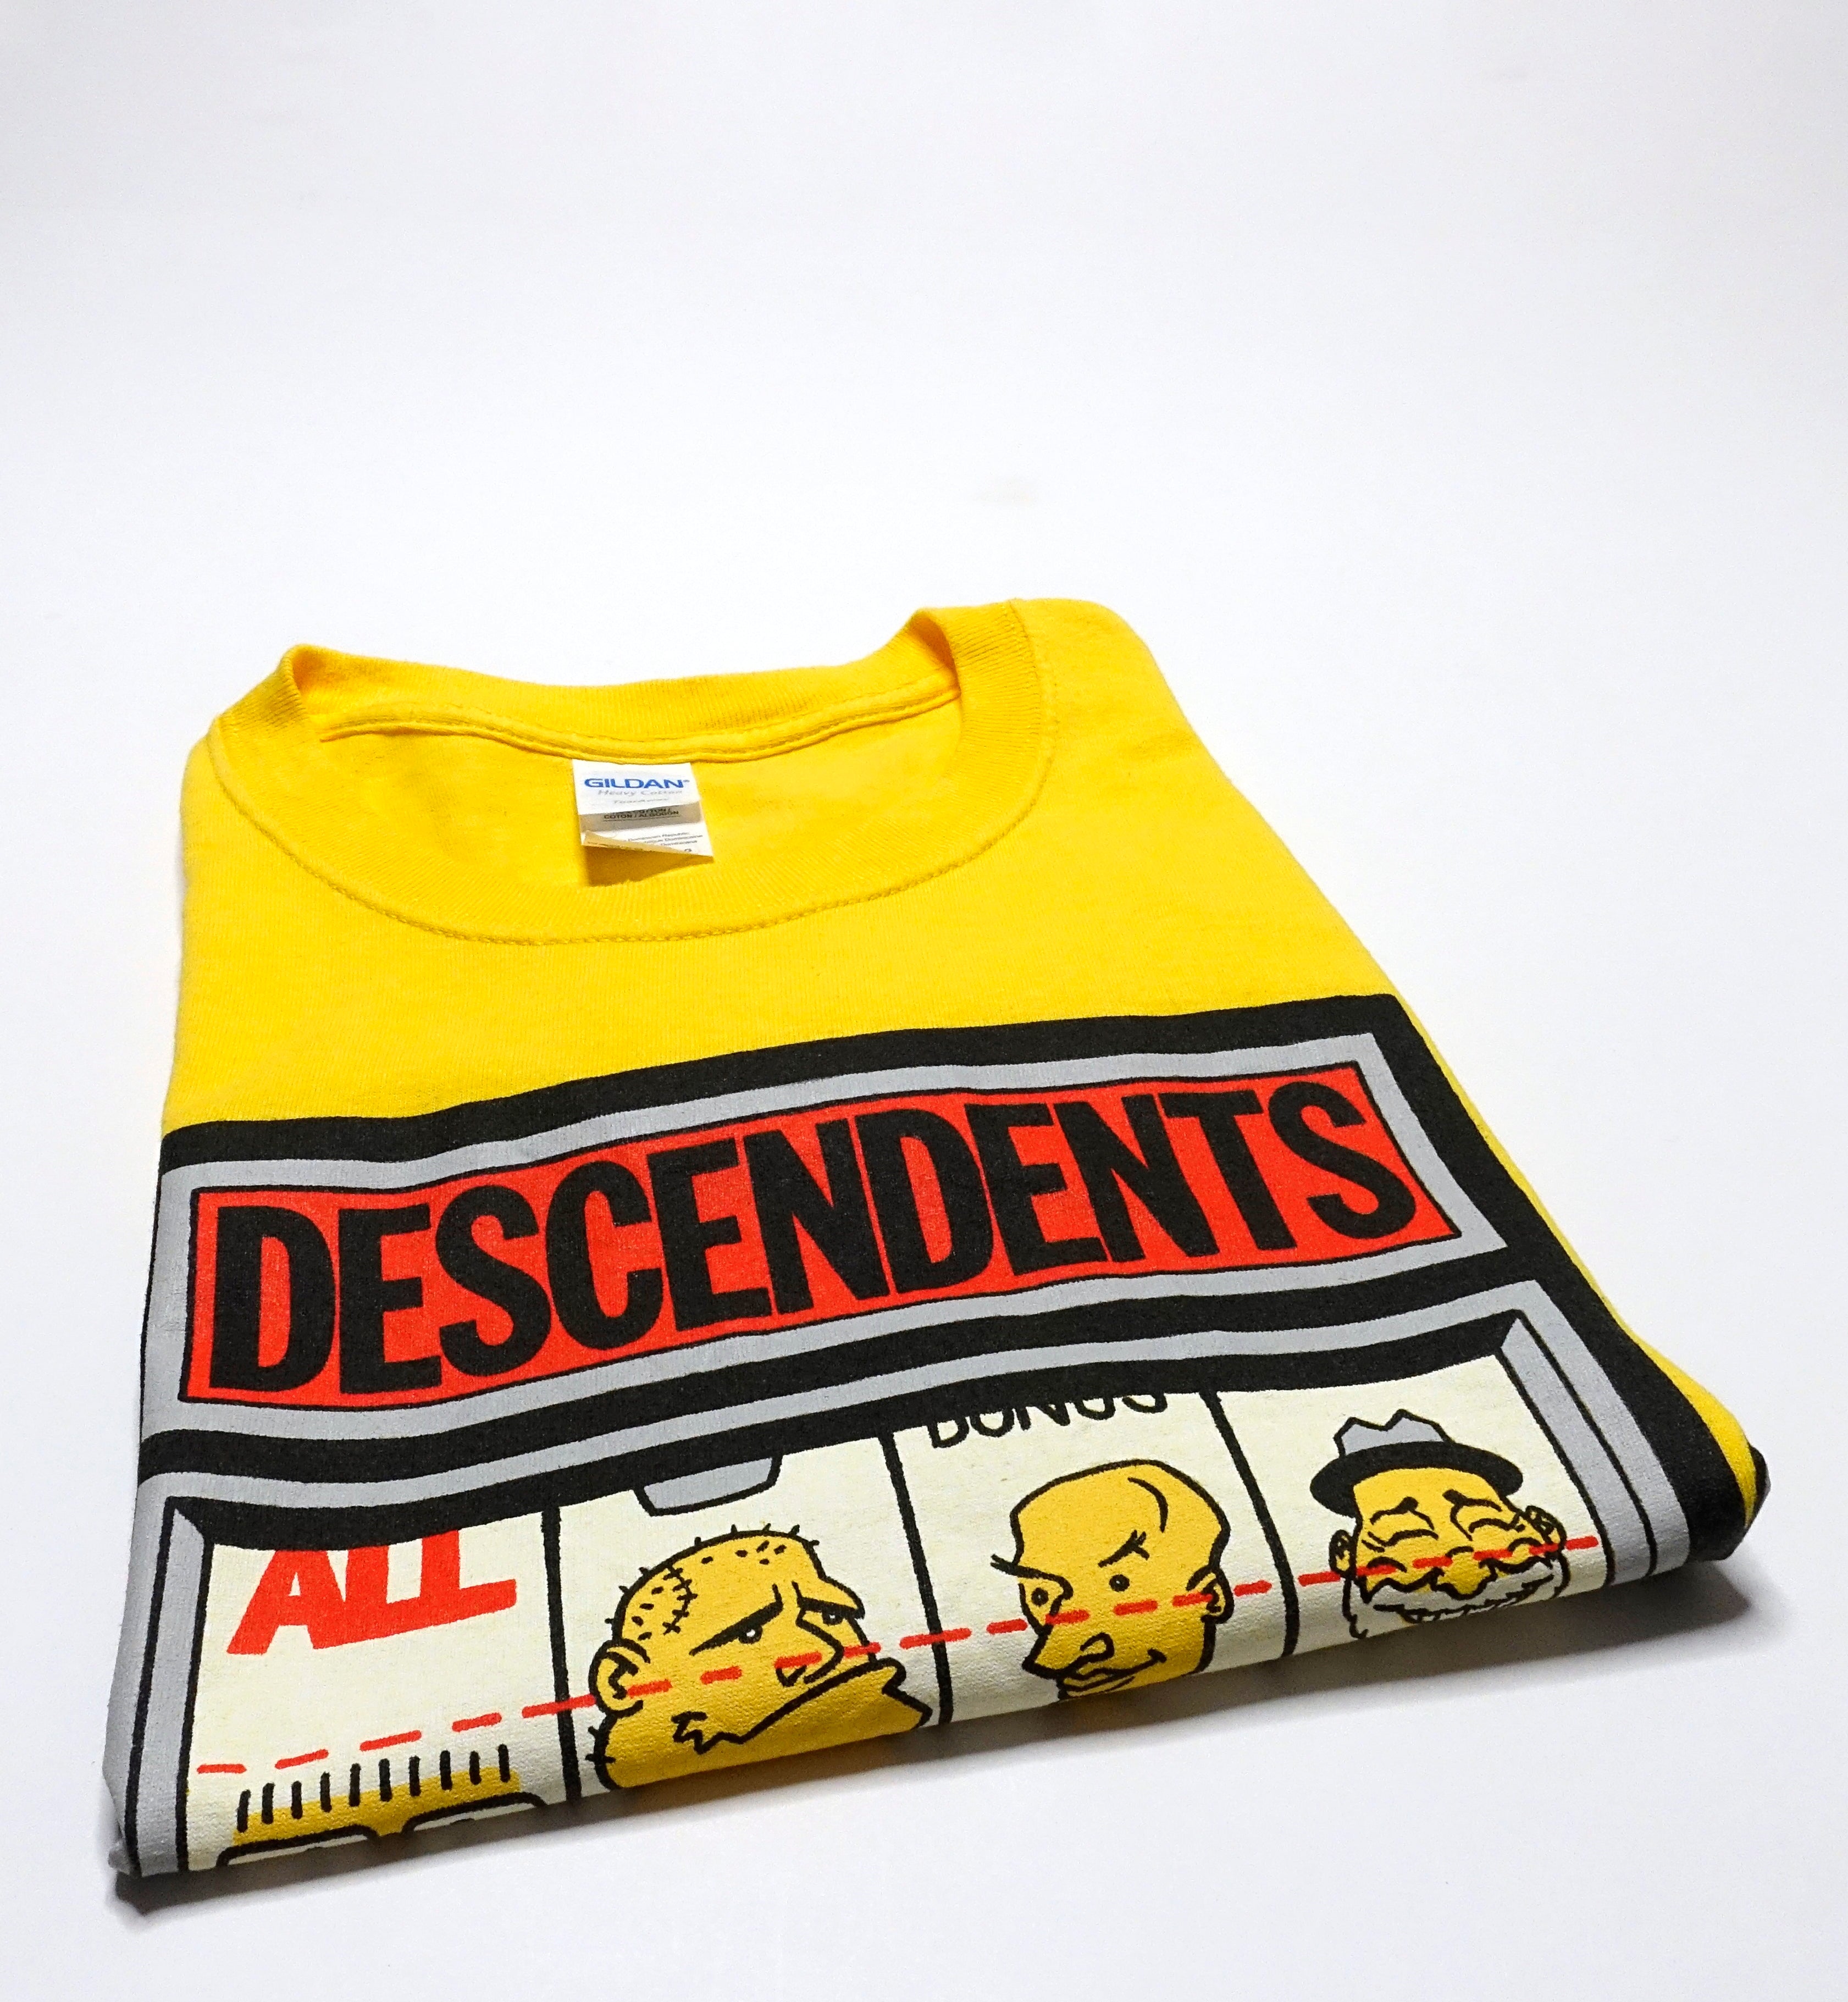 Descendents - Las Vegas Punk Rock Bowling 2019 Tour Shirt Size Large